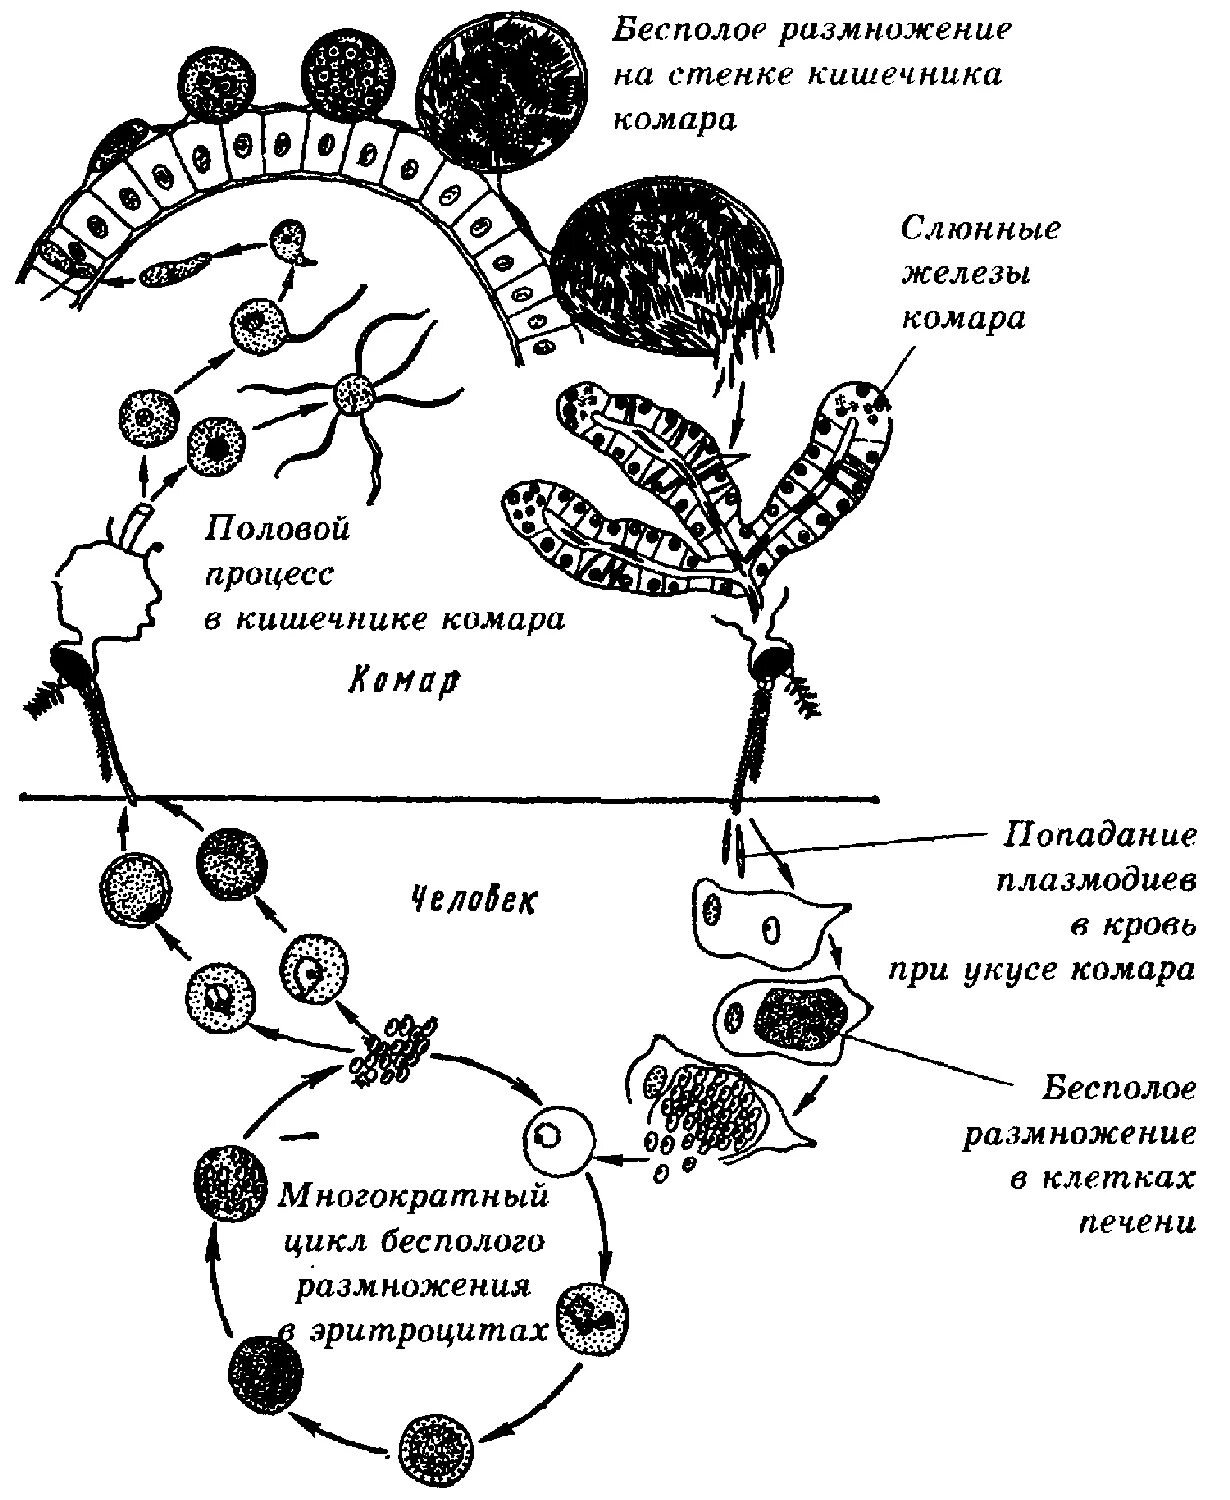 Жизненный цикл плазмодия схема. Жизненный цикл малярийного плазмодия схема. Цикл развития малярийного плазмодия схема. Цикл развития малярийного плазмодия схема рисунок. Малярия цикл развития малярийного плазмодия